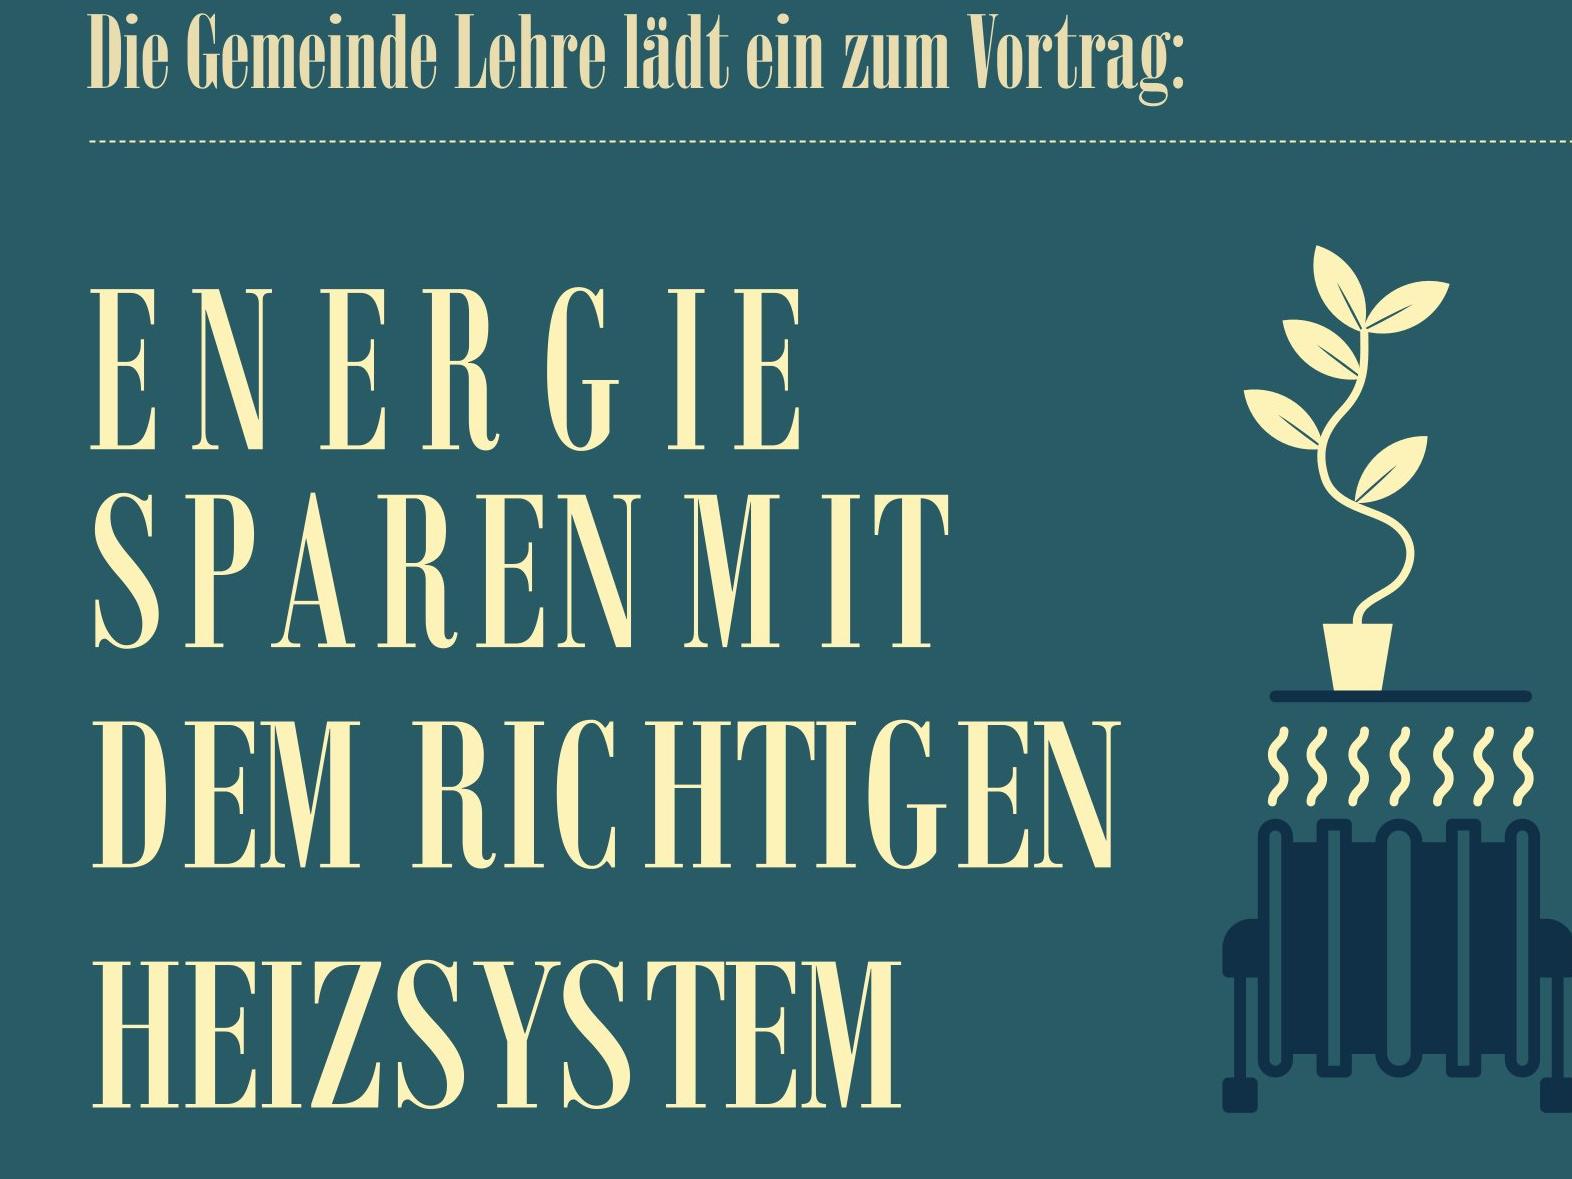 Bild(© Gemeinde Lehre): Im Vortrag geht es darum. wie man mit modernen Heizsystemen Energie einsparen kann.